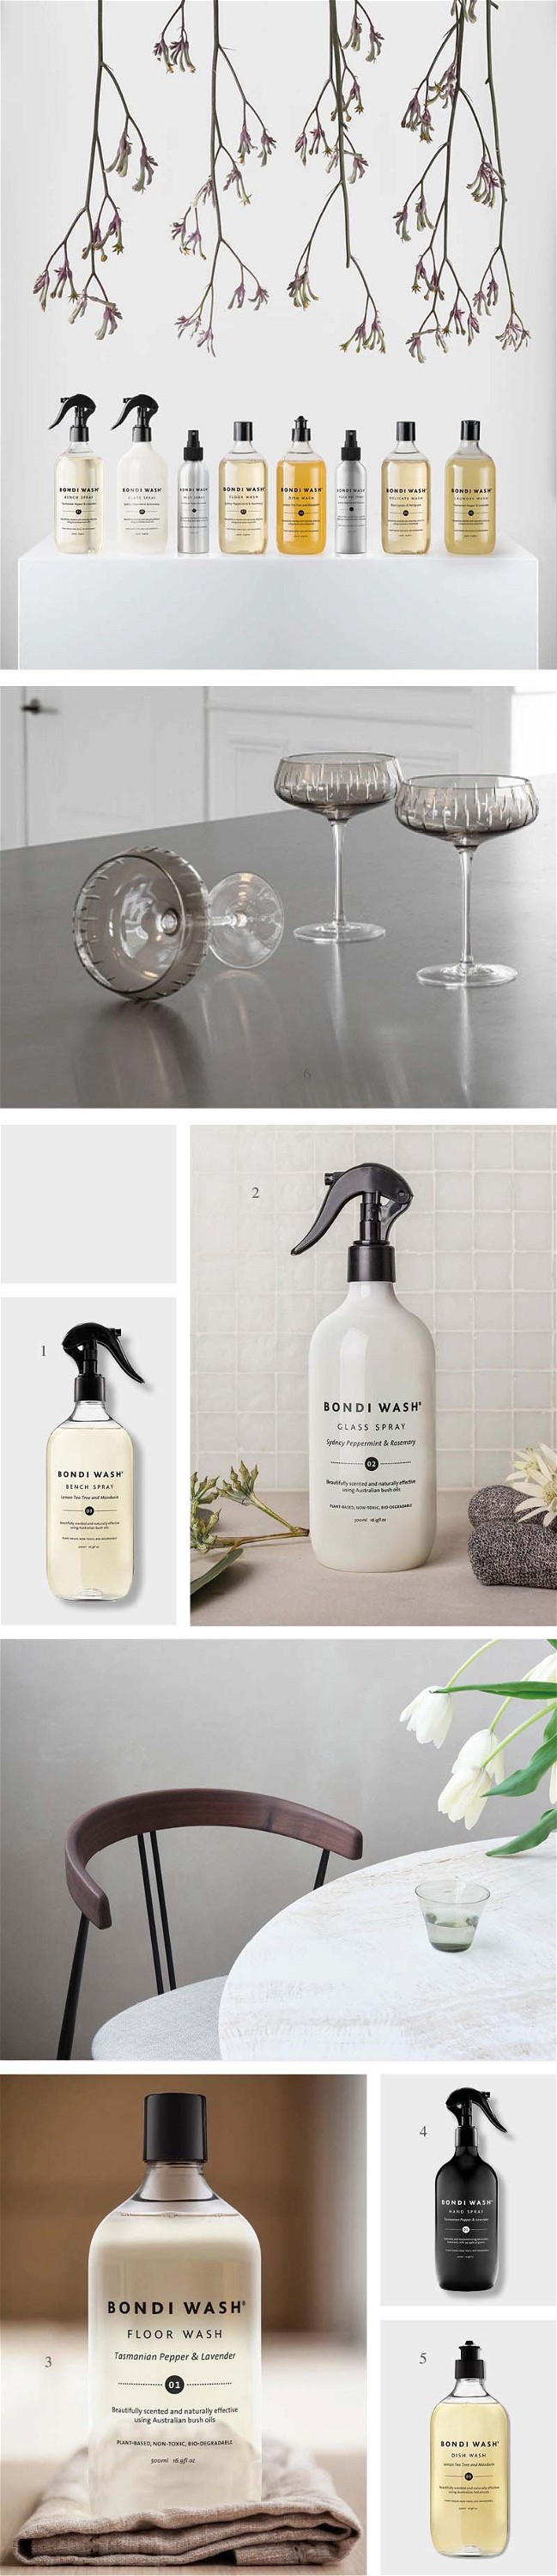 Fotocollage, die diverse Produkte von Bondi Wash nebeneinander aufgereiht zeigt